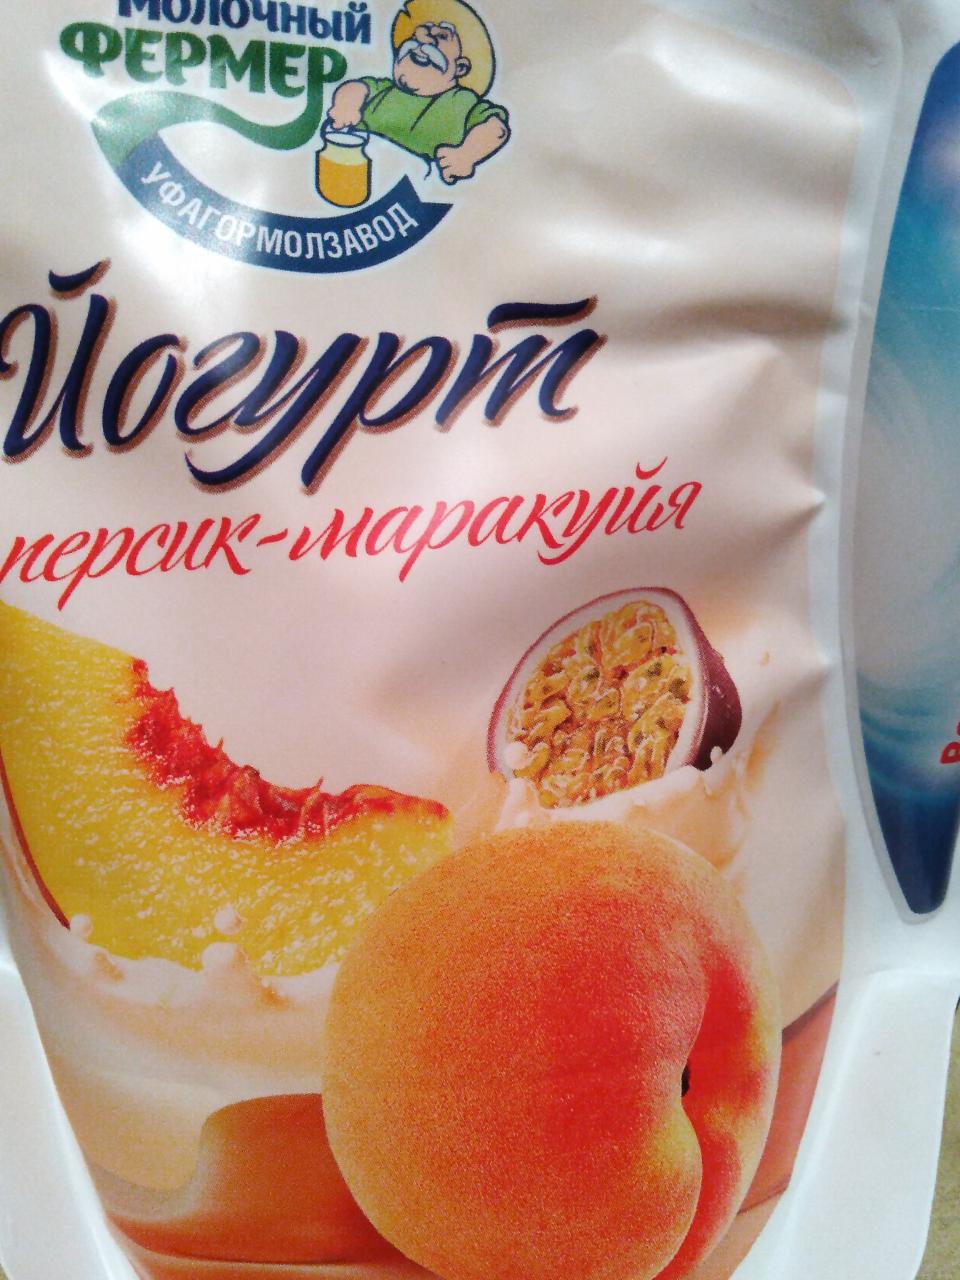 Фото - Йогурт 2.5% персик-маракуйя Молочный фермер Уфагормолзавод